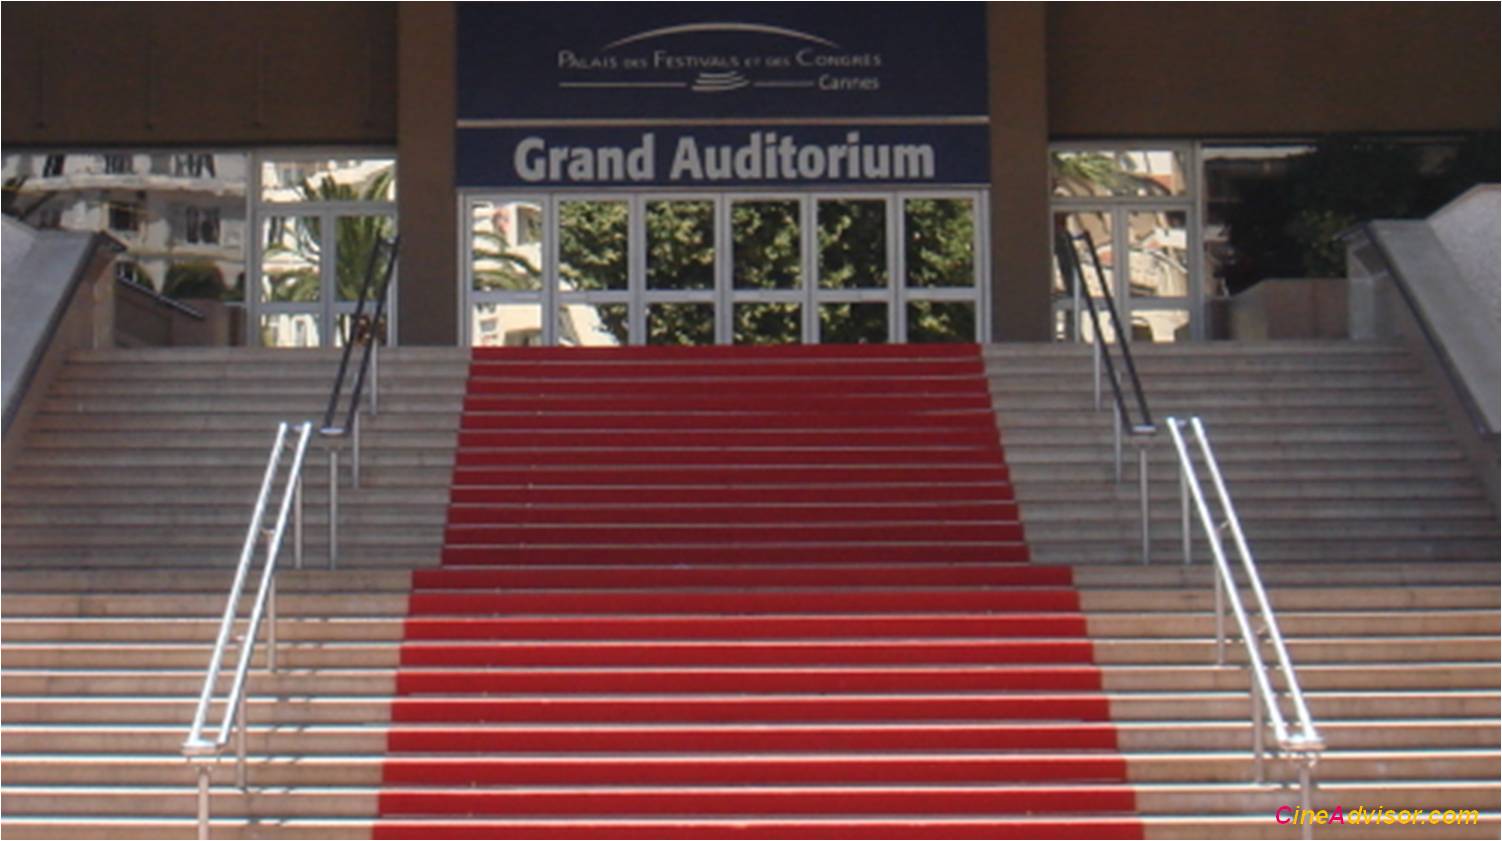 Palais des Festival de Cannes